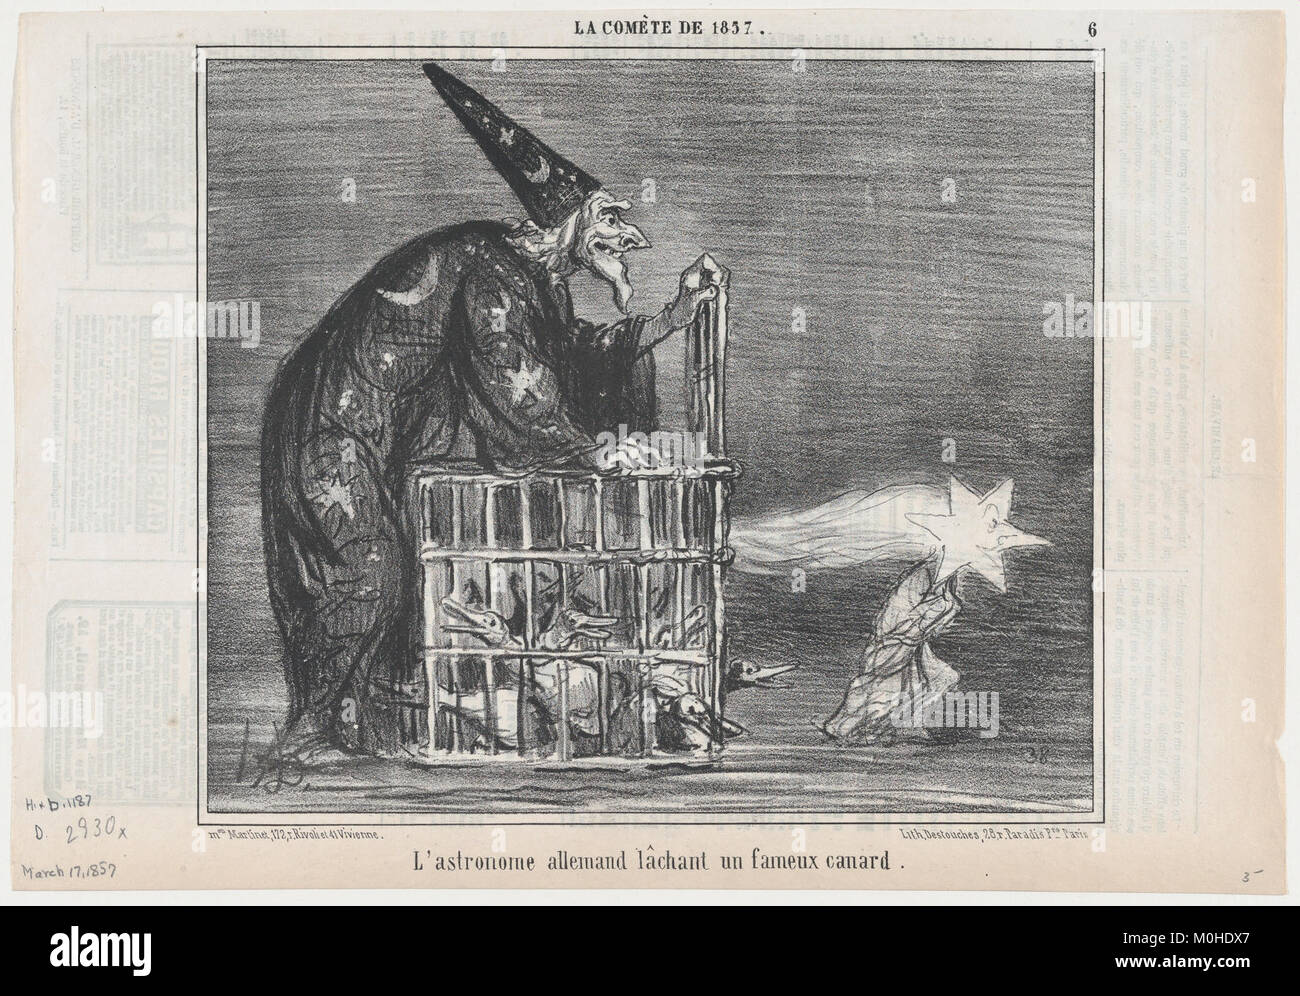 L'astronome allemand lâchant fameux onu canard, da La Comète de 1857, pubblicato in Le Charivari, Marzo 17, 1857 INCONTRATO DP876637 Foto Stock